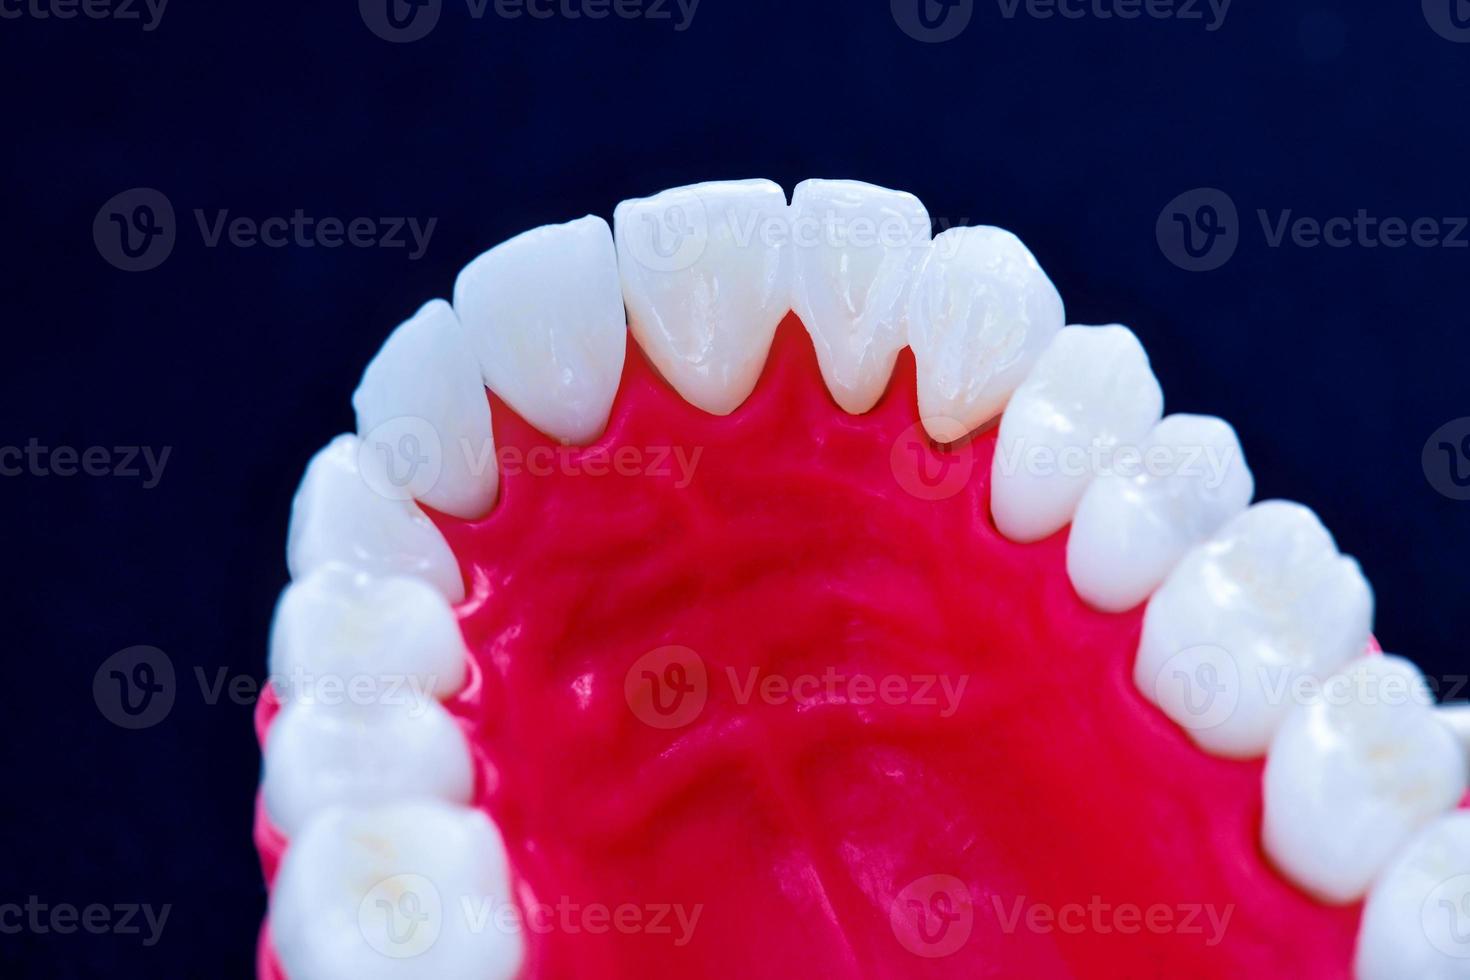 mandíbula superior humana con modelo de anatomía de dientes y encías foto